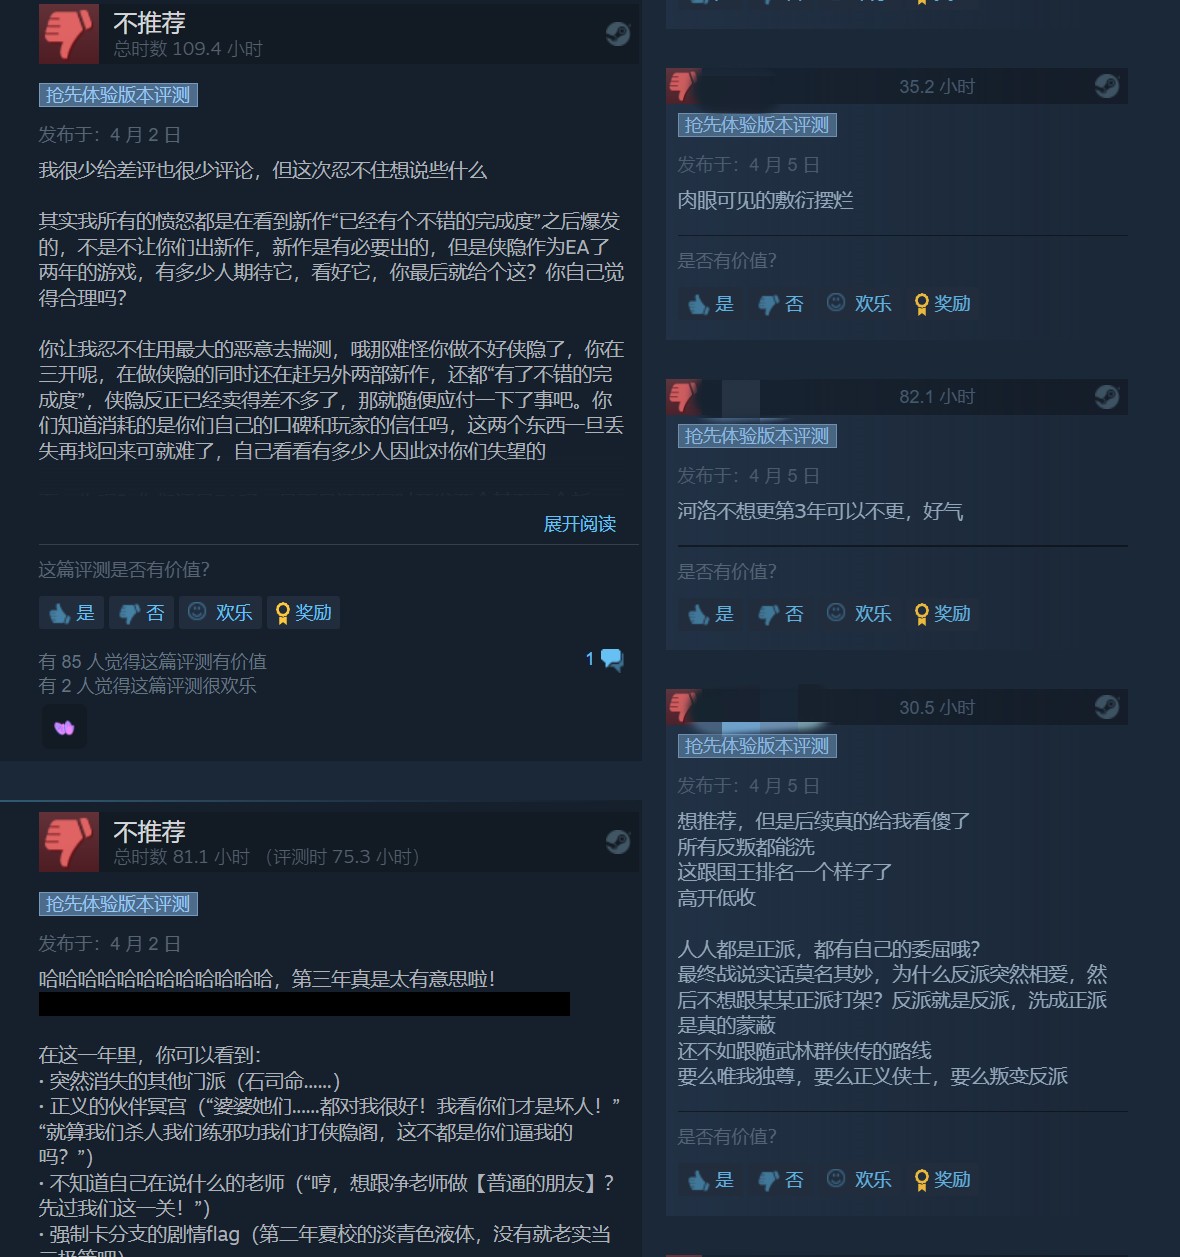 《侠之道》第三年更新翻车 Steam出现大量差评、官方做出回应